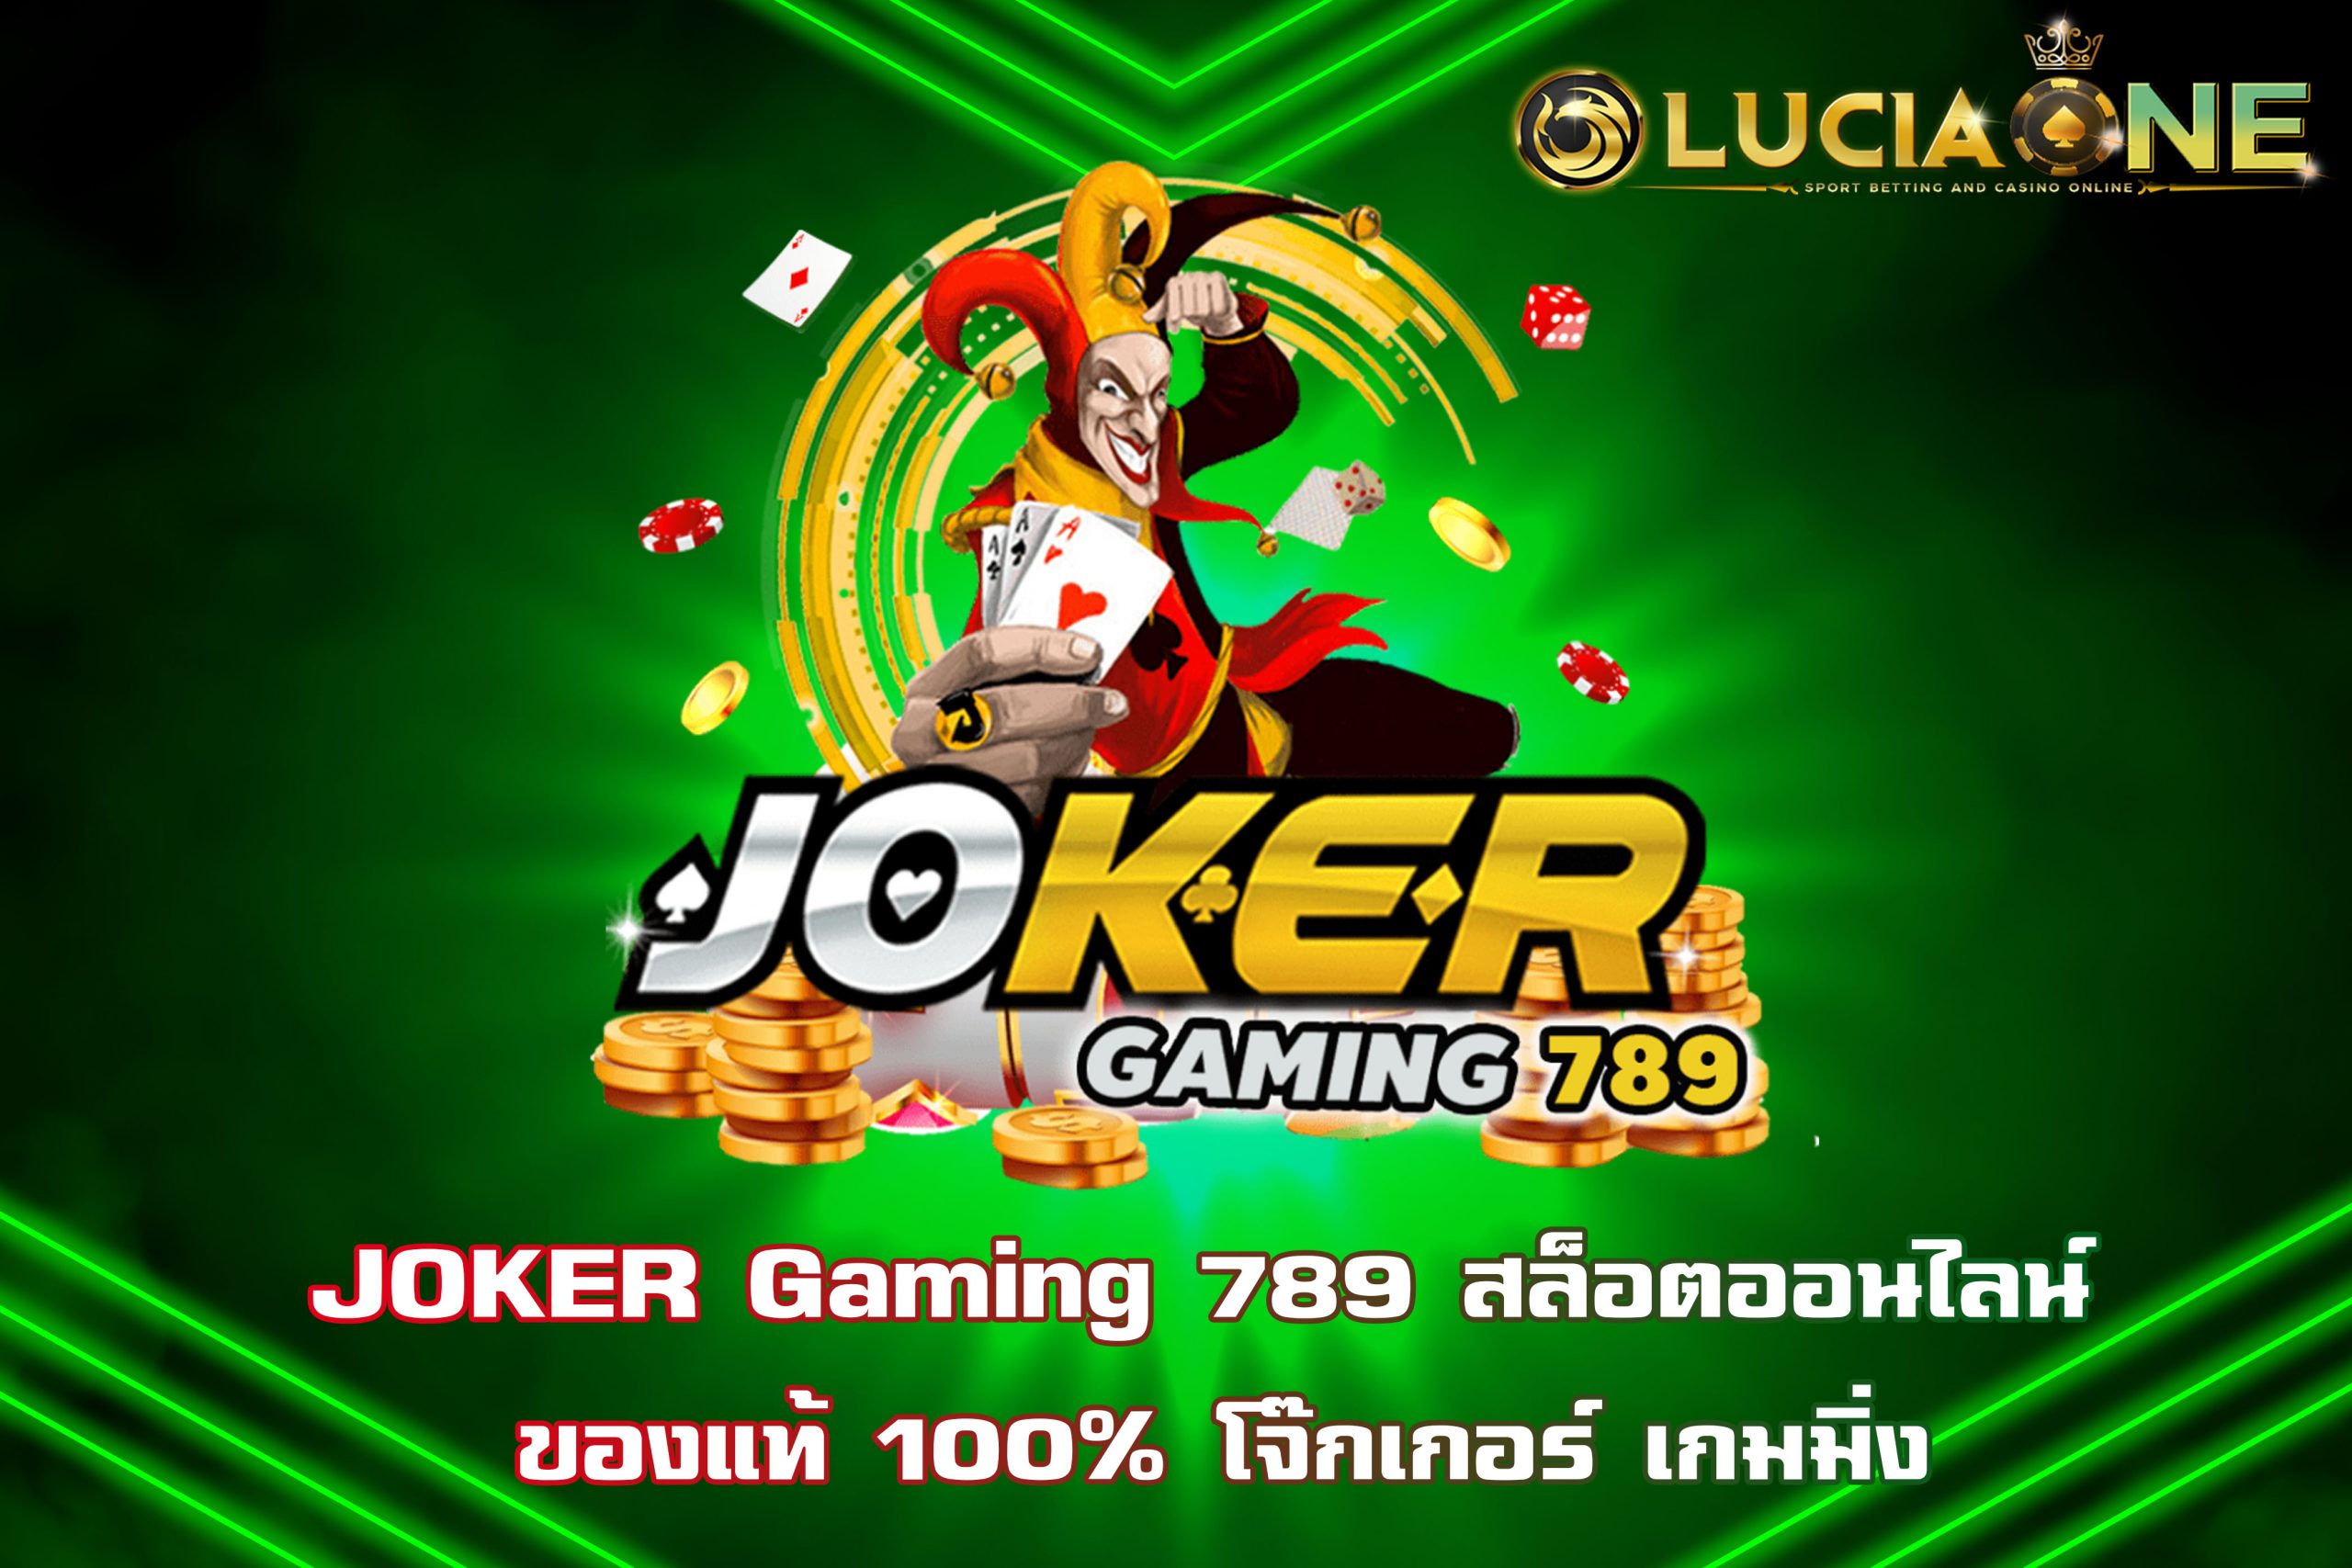 JOKER Gaming 789